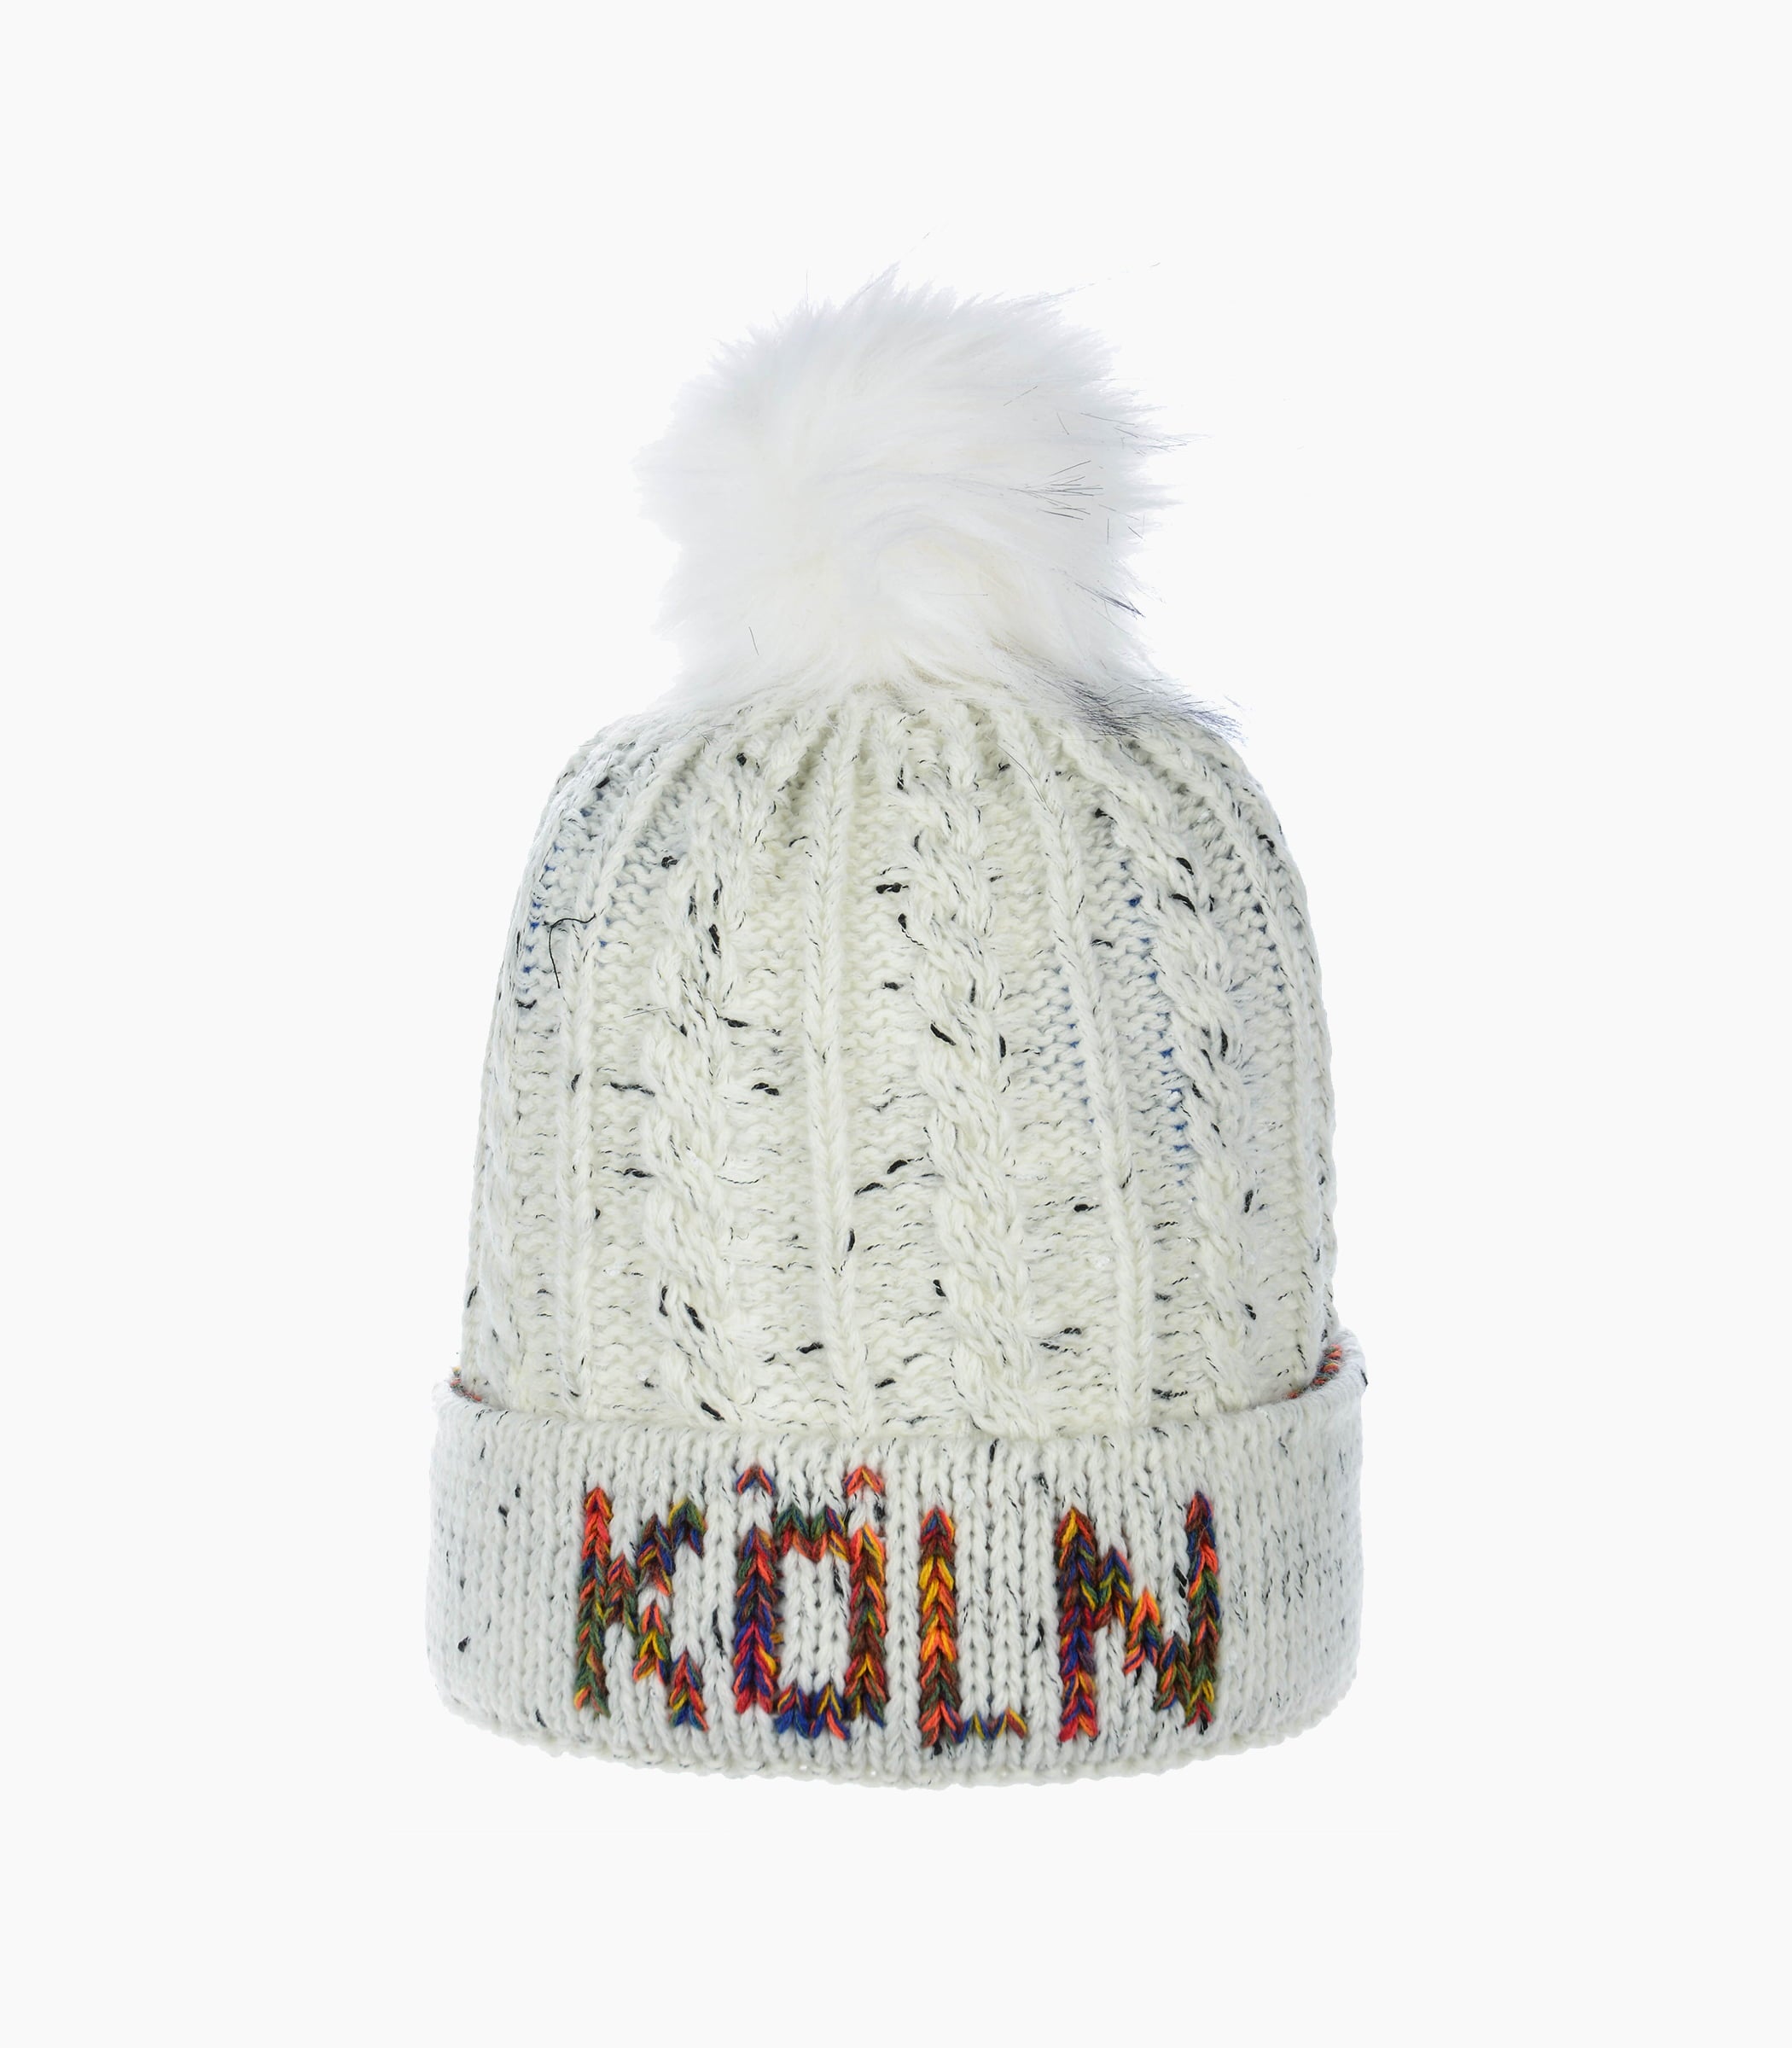 Köln Winter hat - Robin Ruth